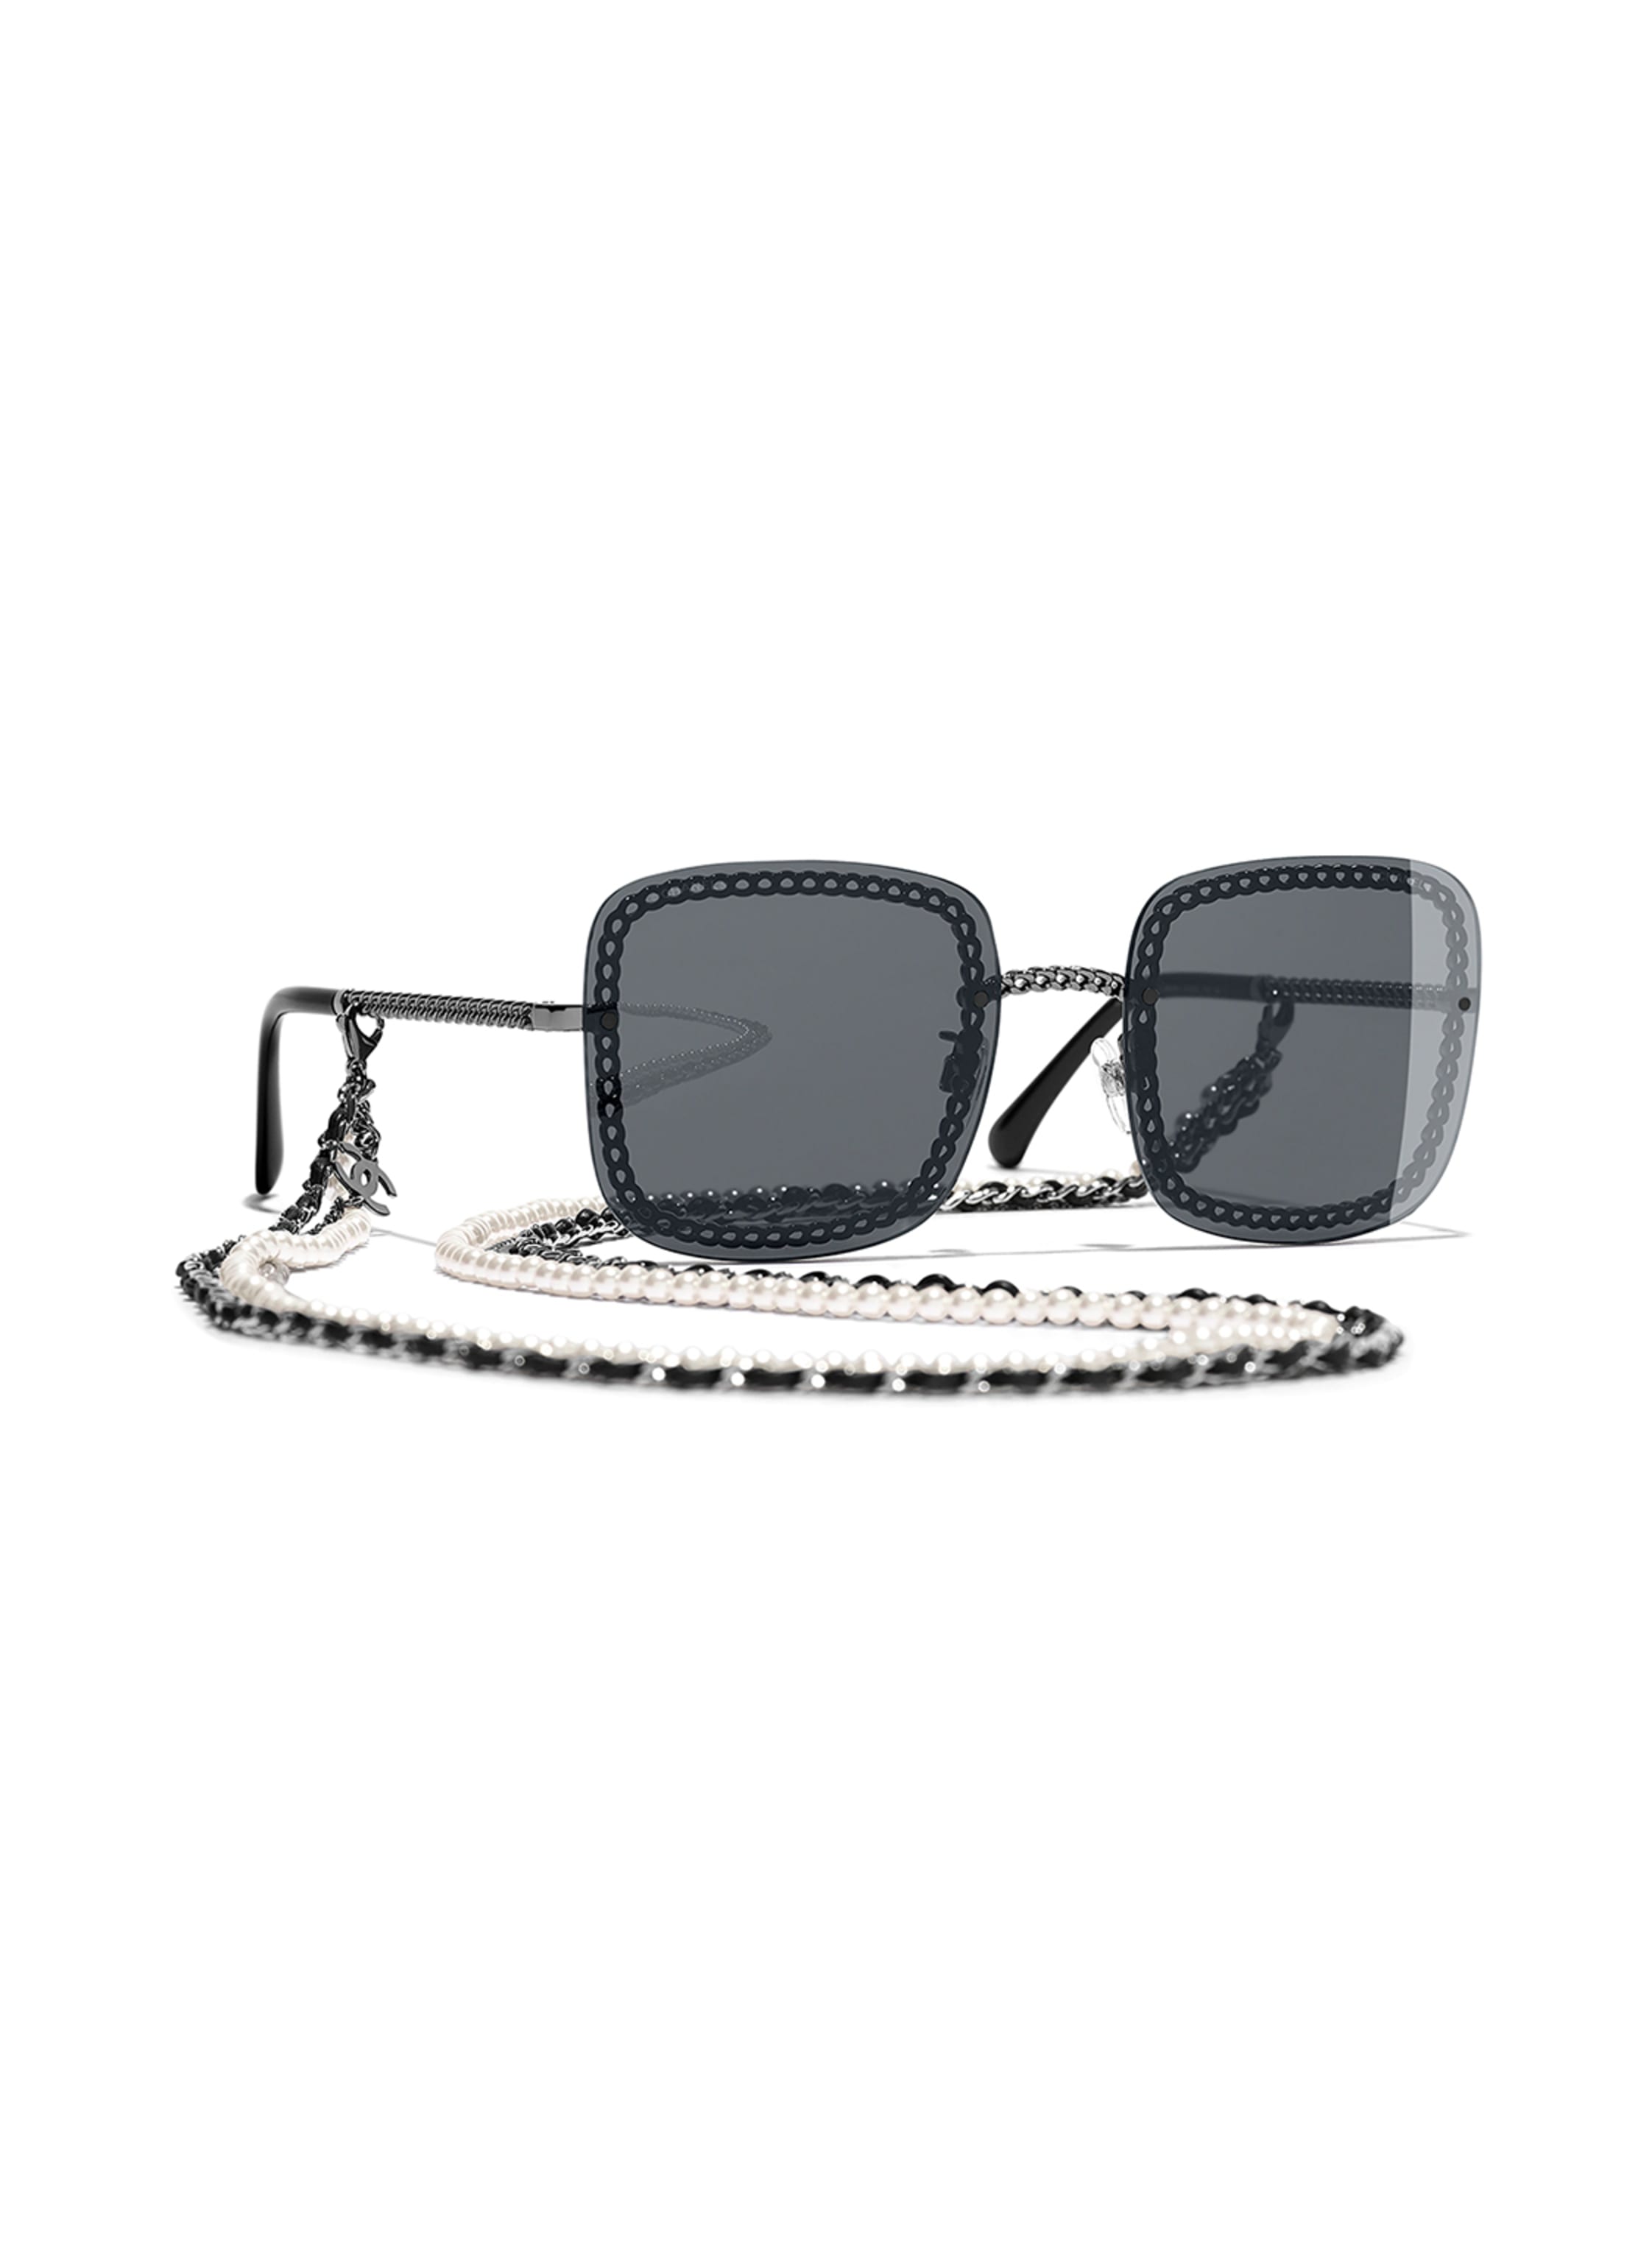 CHANEL Square sunglasses in c108s4 - black/ gray